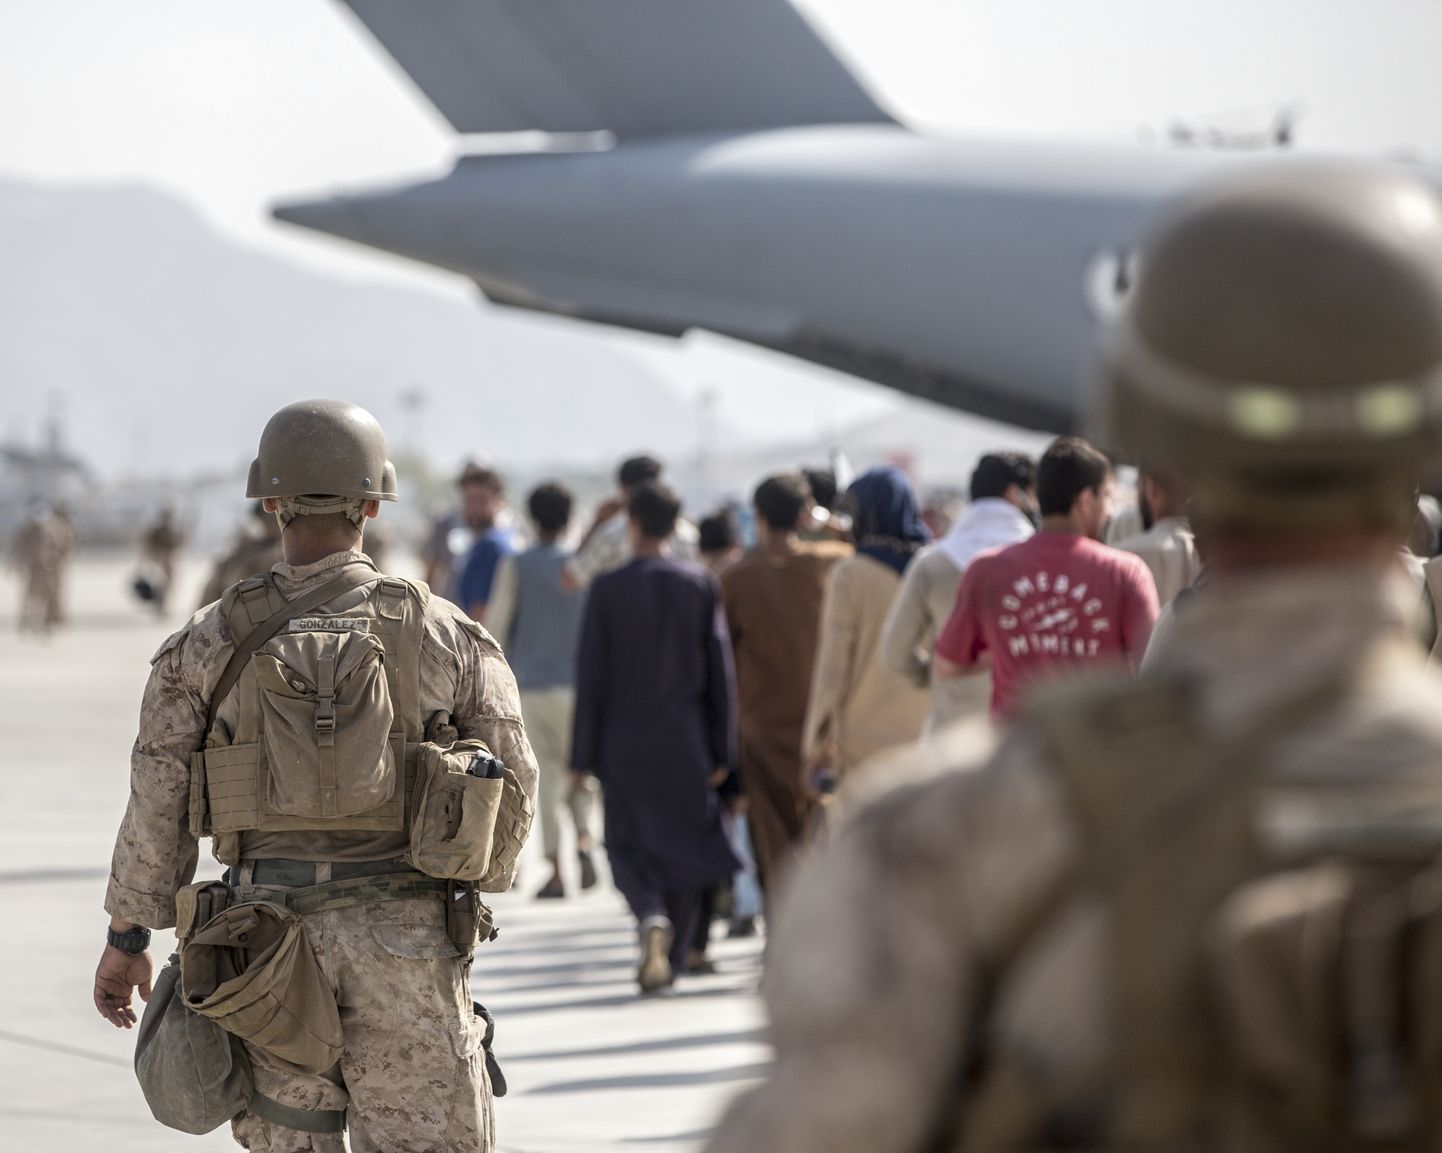 USA merejalaväelased juhatamas evakueeritavaid afgaane Kabuli lennujaamas USAsse lennanud lennukile